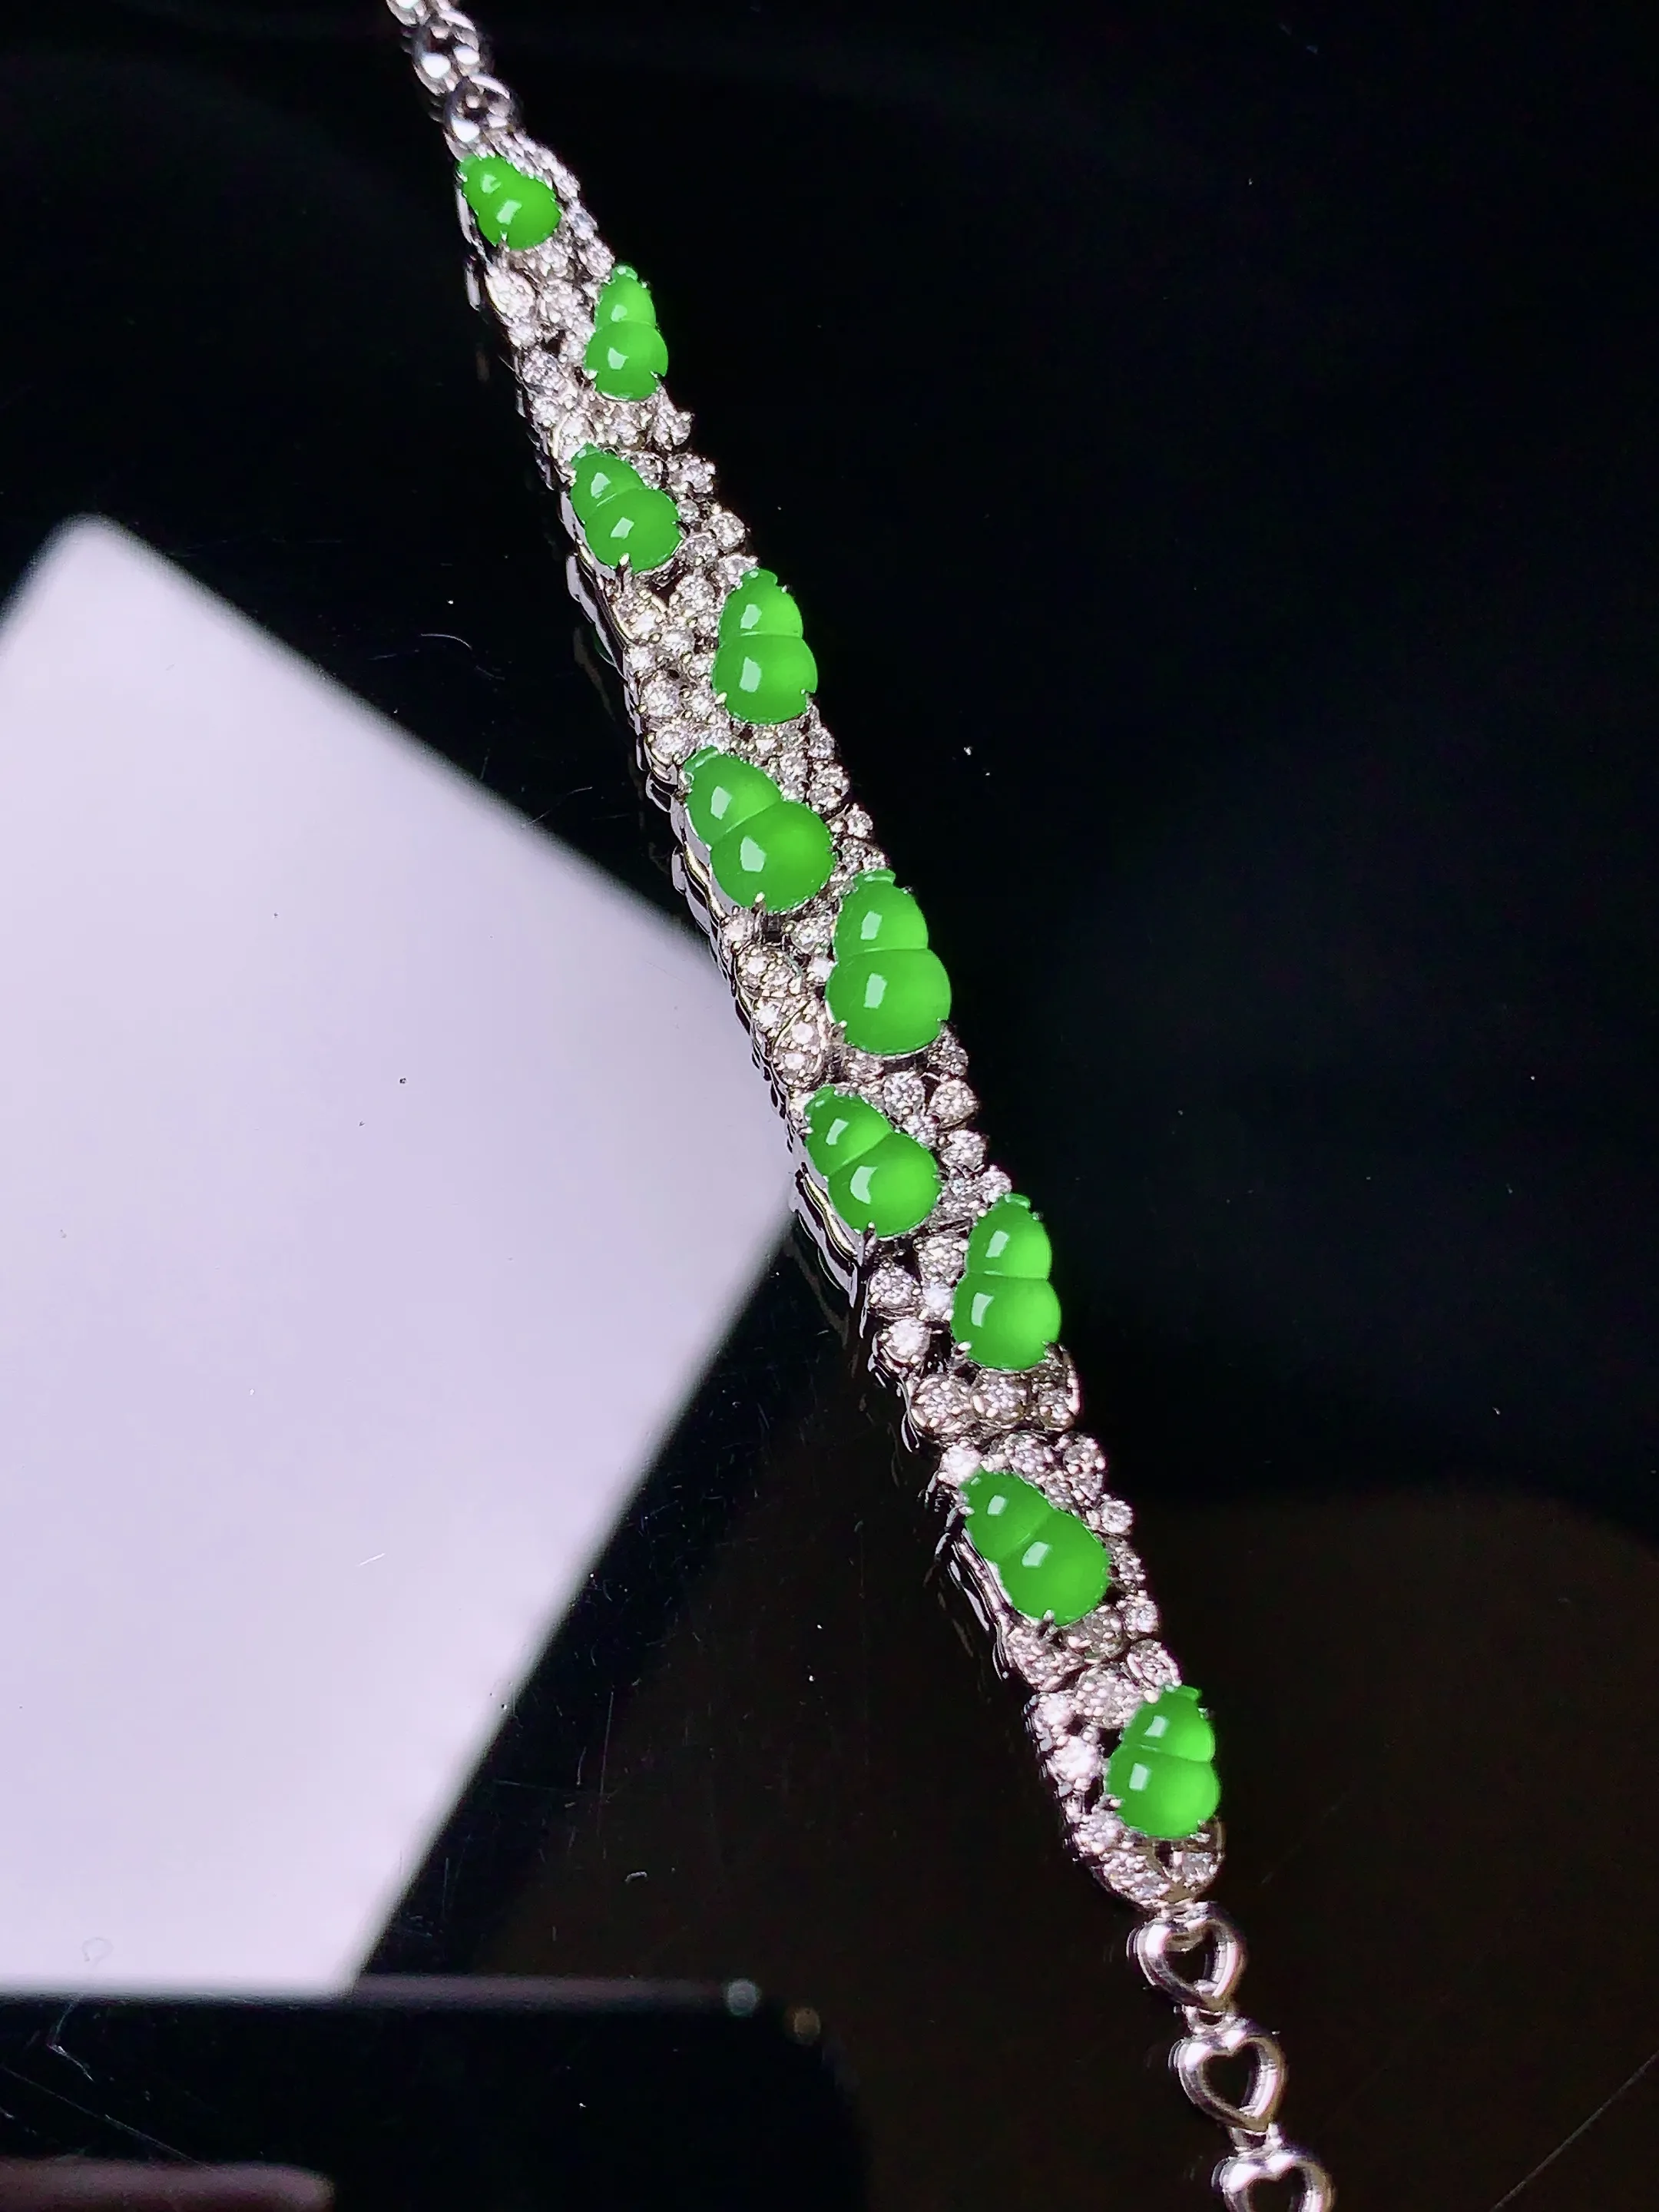 18K金钻镶嵌满绿葫芦手链 玉质细腻 色泽清新艳丽 款式新颖时尚精美 亮眼 整体尺寸75.5*7.3